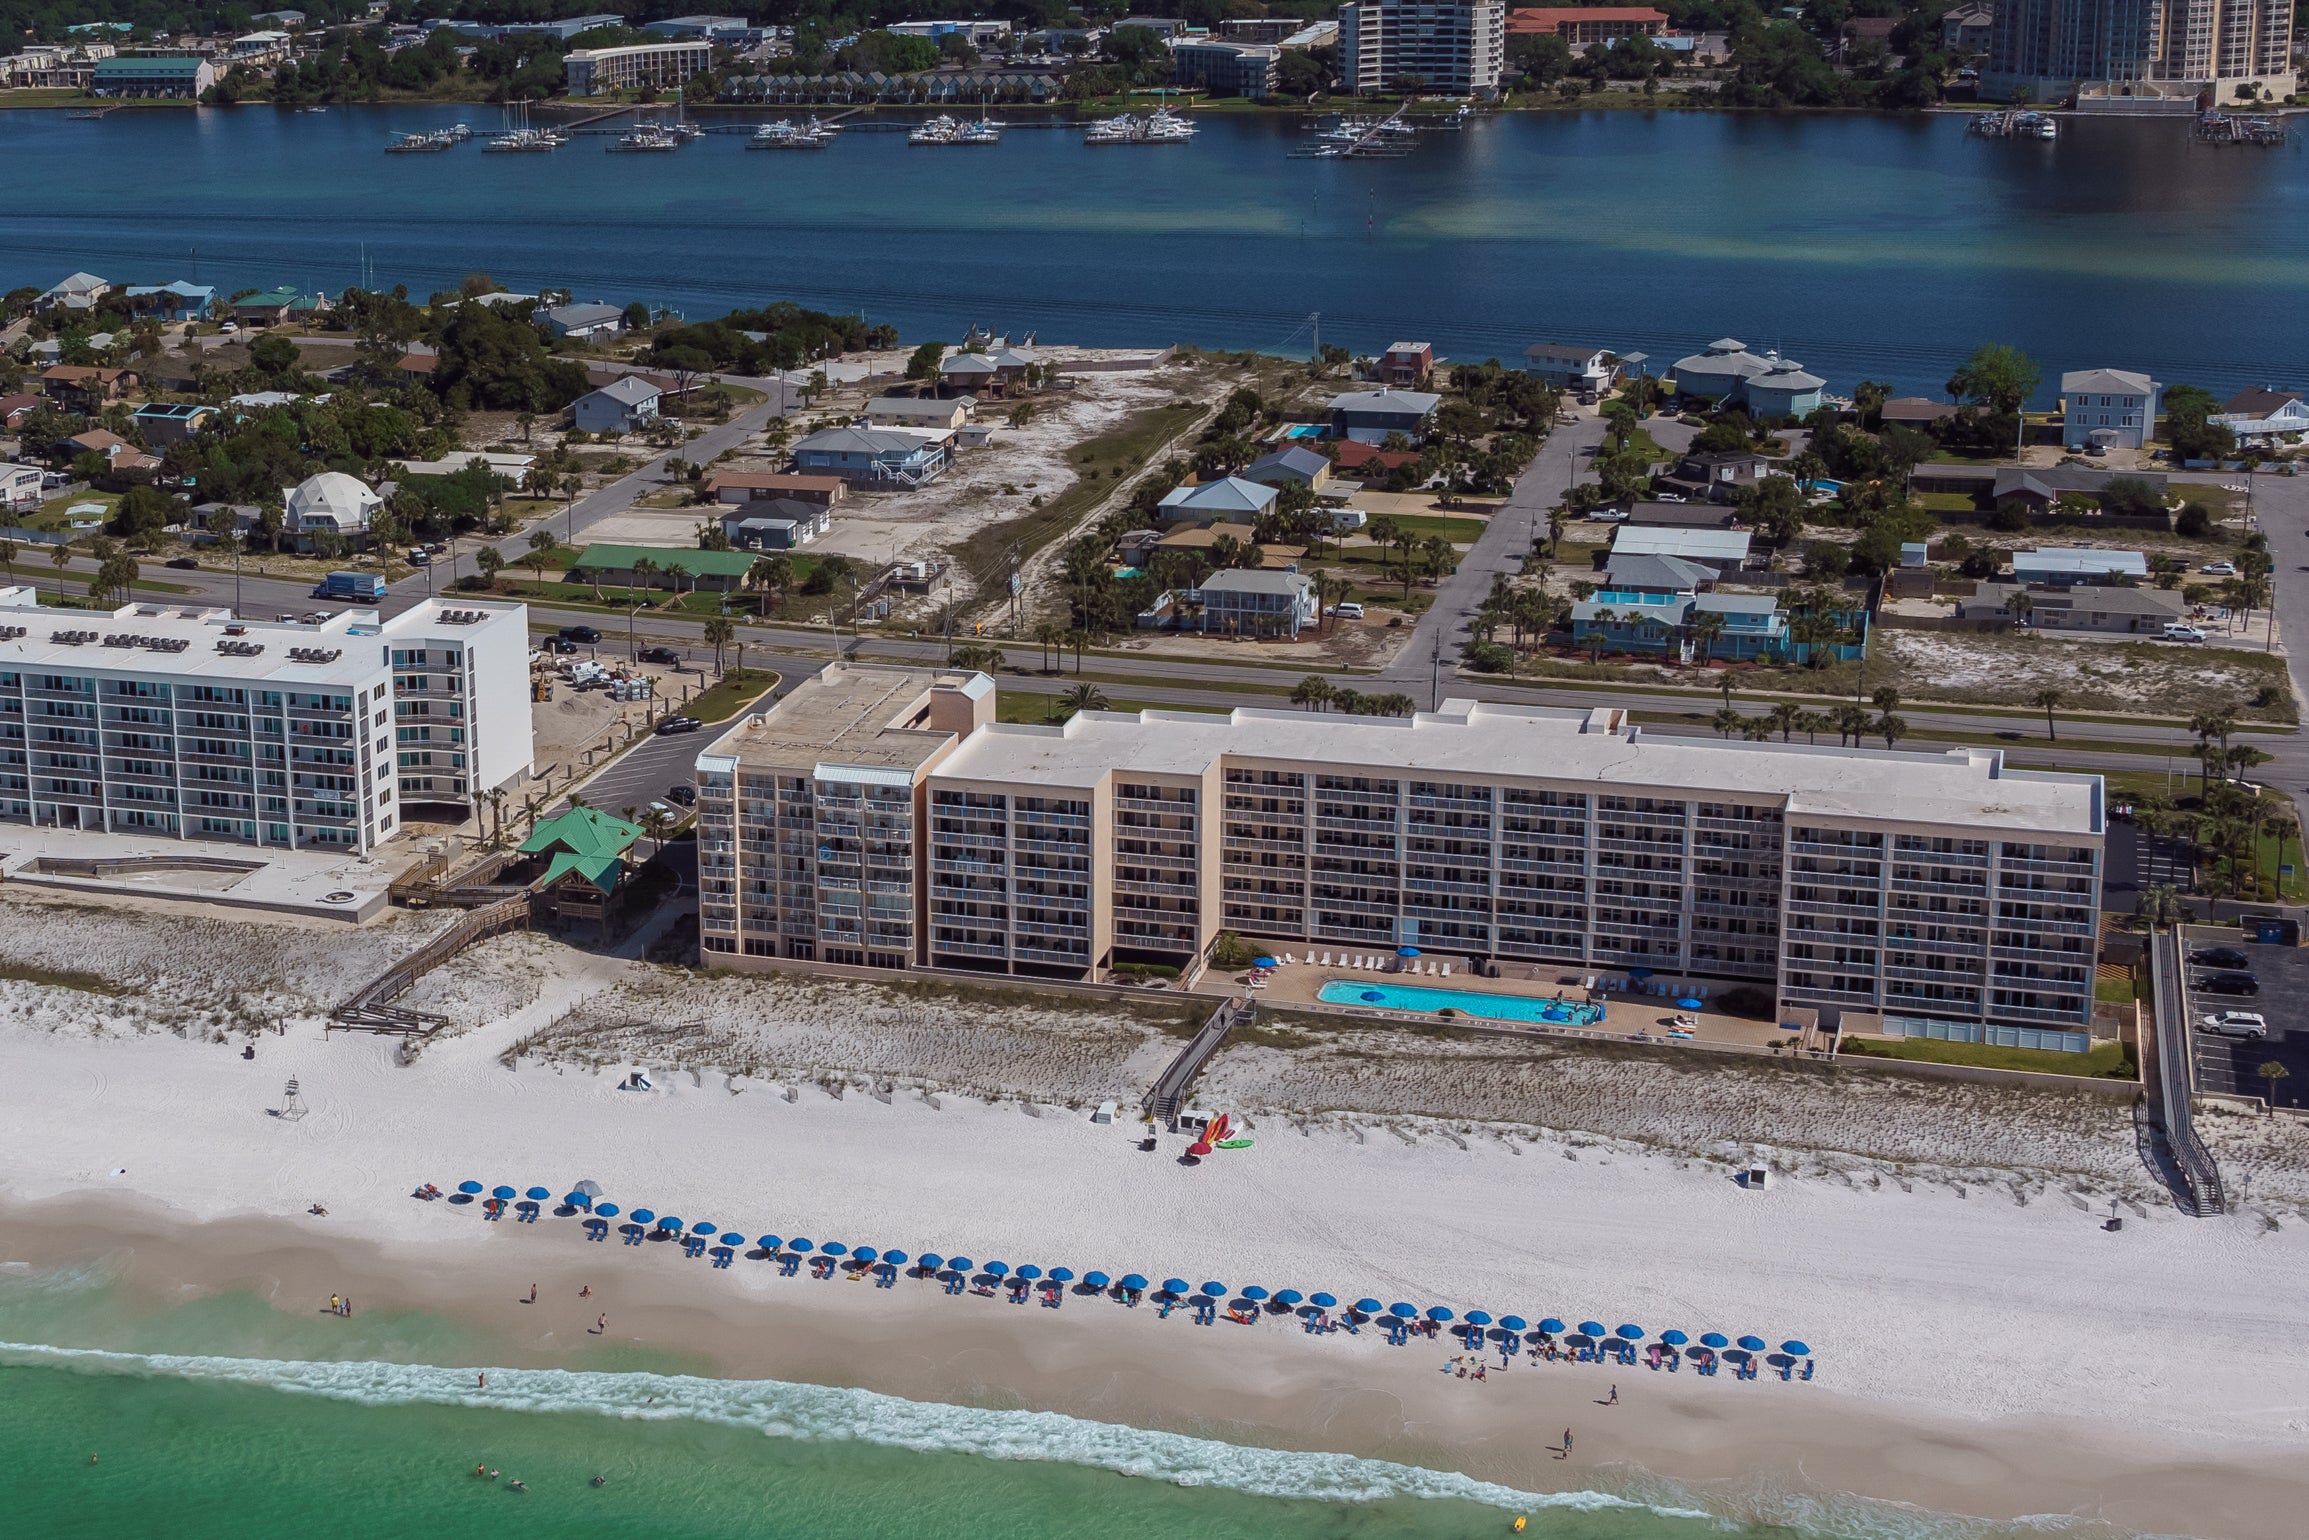 Aerial View of the Islander Beach Resort